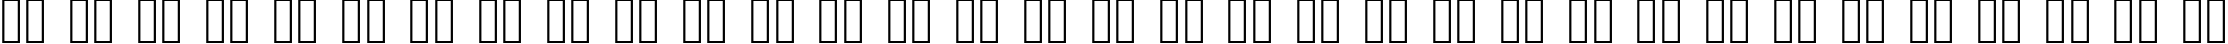 Пример написания русского алфавита шрифтом xotax